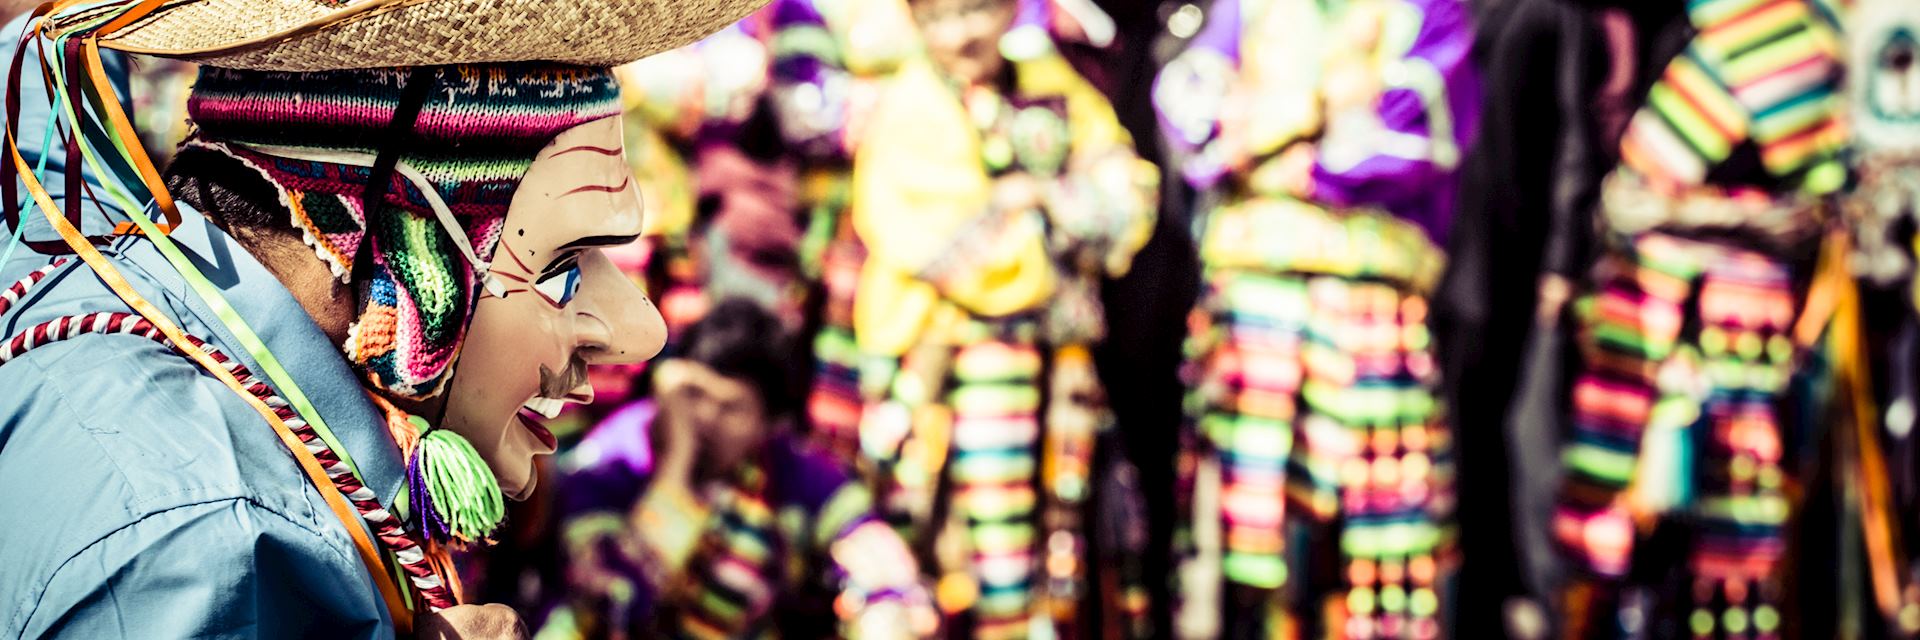 Festival dancers in Cuzco, Peru